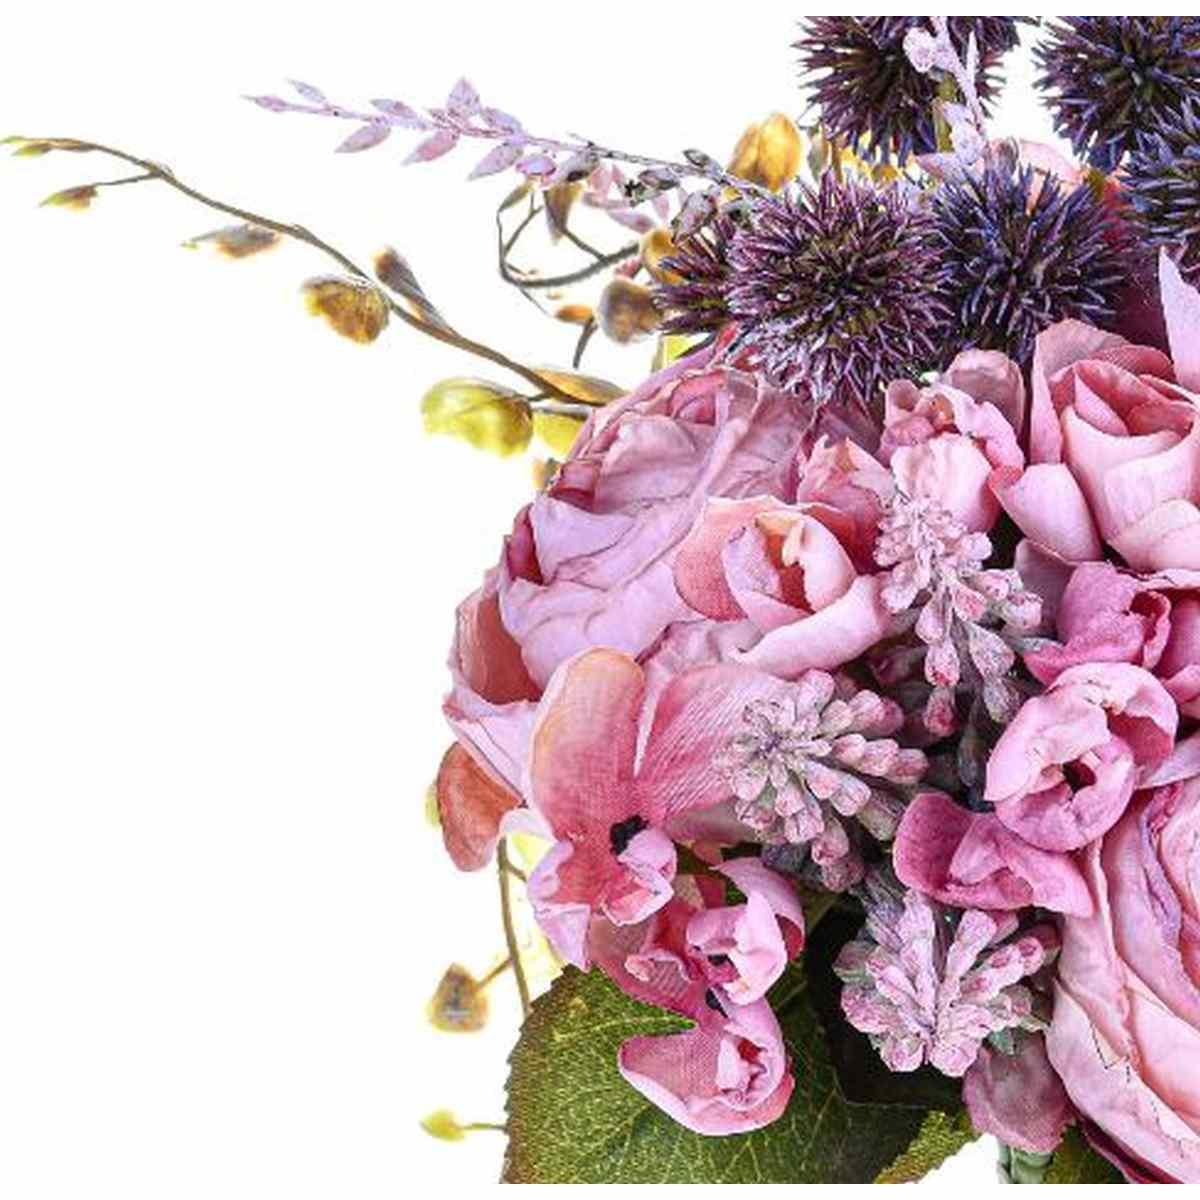 Bouquet Fiori Misti Artificiali Rosa cm.33